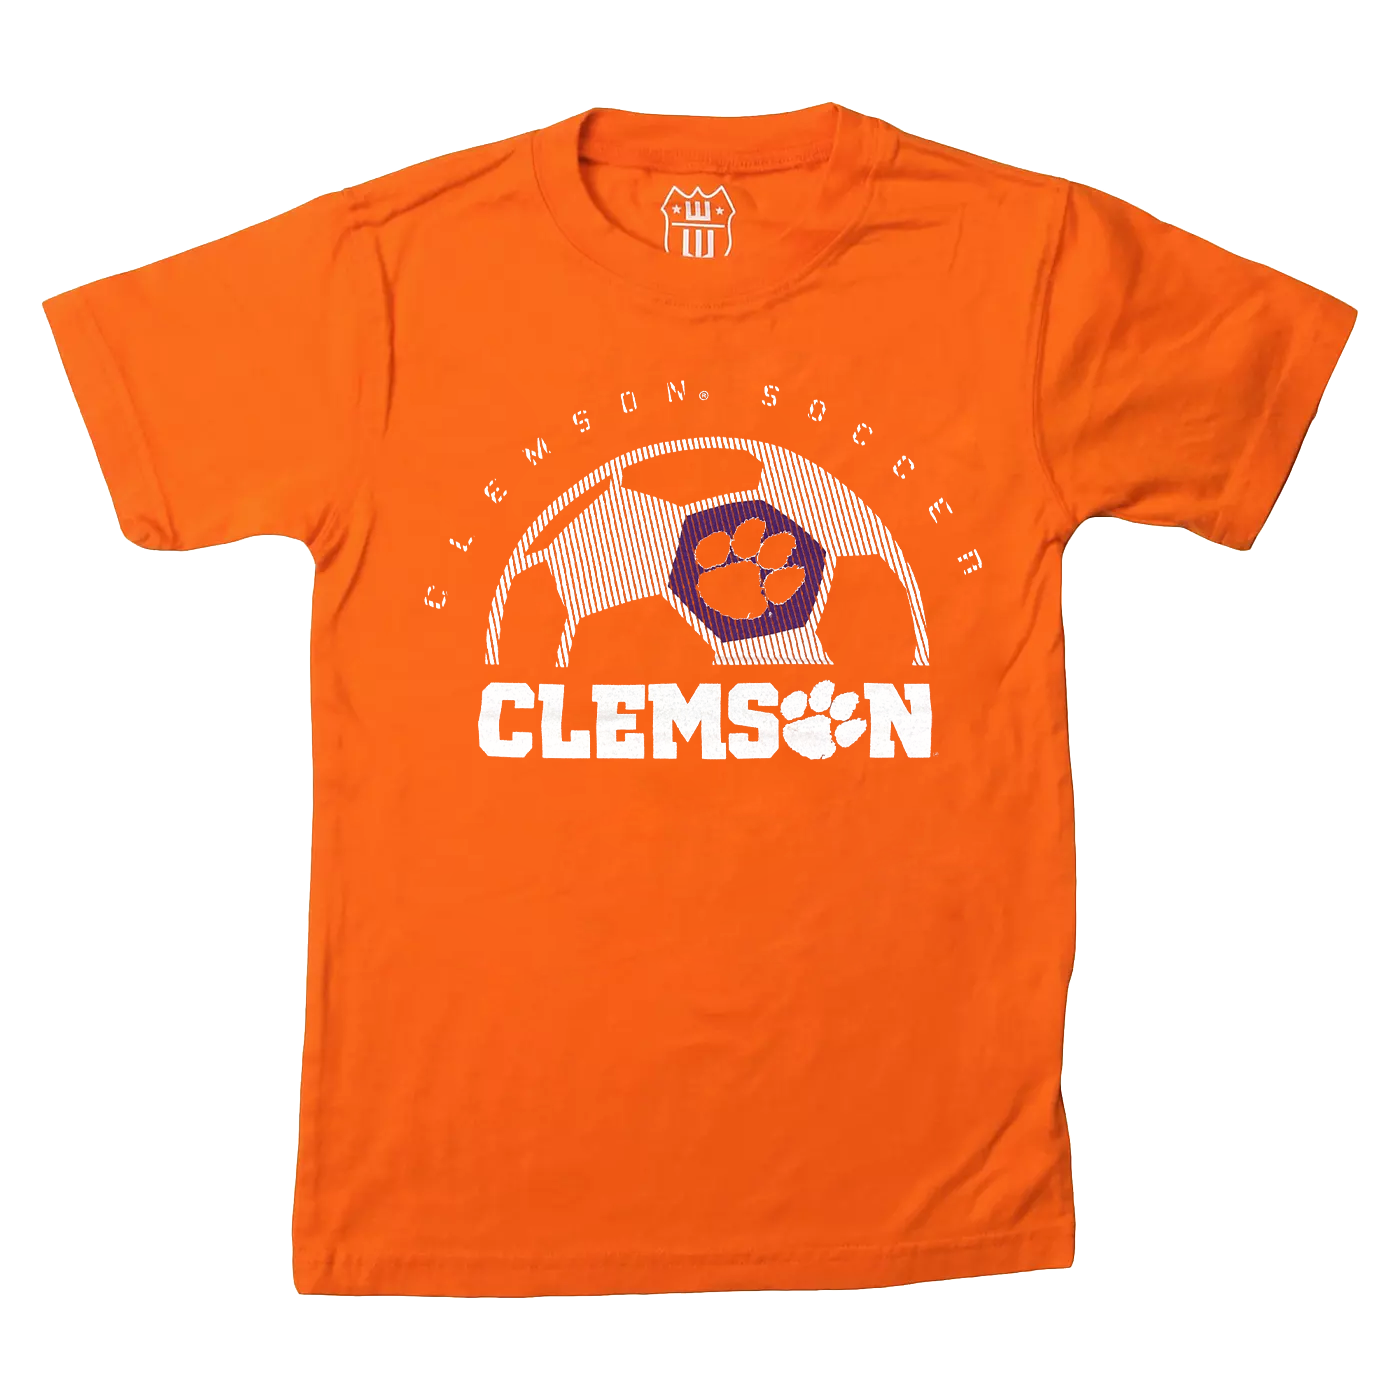 Thiết kế áo T-shirt thiếu niên mang phong cách bóng đá và màu cam đang hot trở lại! Hãy cùng chúng tôi đón xem những chiếc áo trẻ trung, thể thao và đầy năng lượng này để sẵn sàng cho các hoạt động mùa hè nhé!